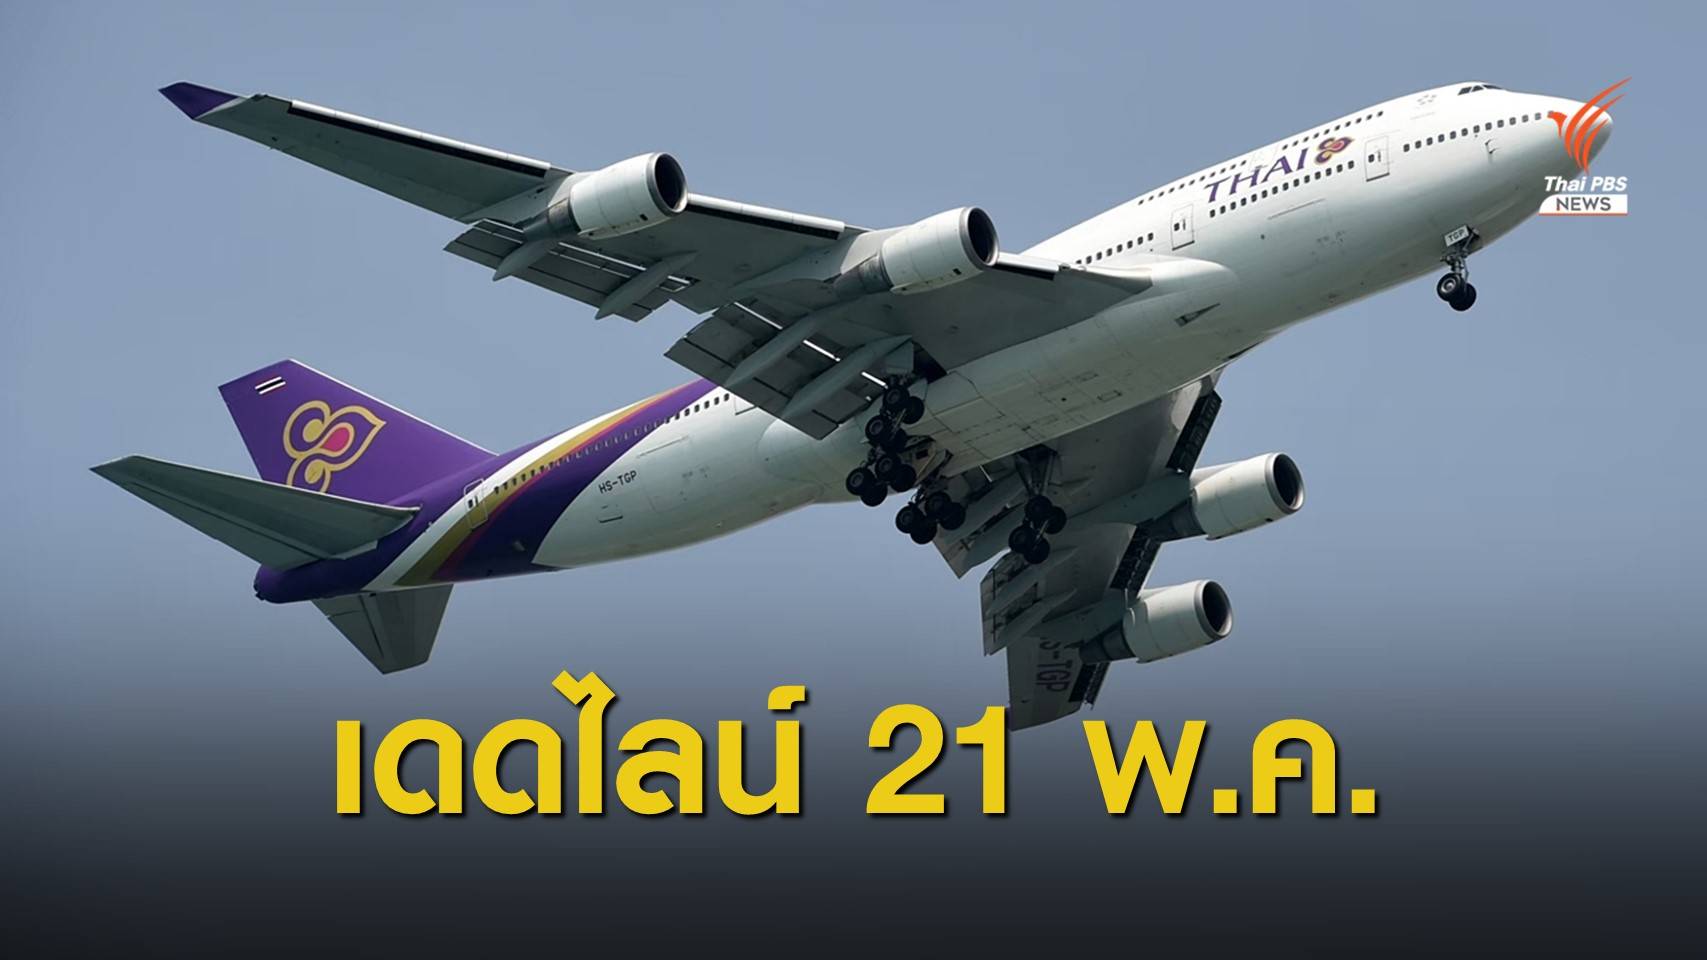 “ศักดิ์สยาม” ขีดเส้นส่งแผนฟื้นฟูการบินไทย 21 พ.ค.นี้ 